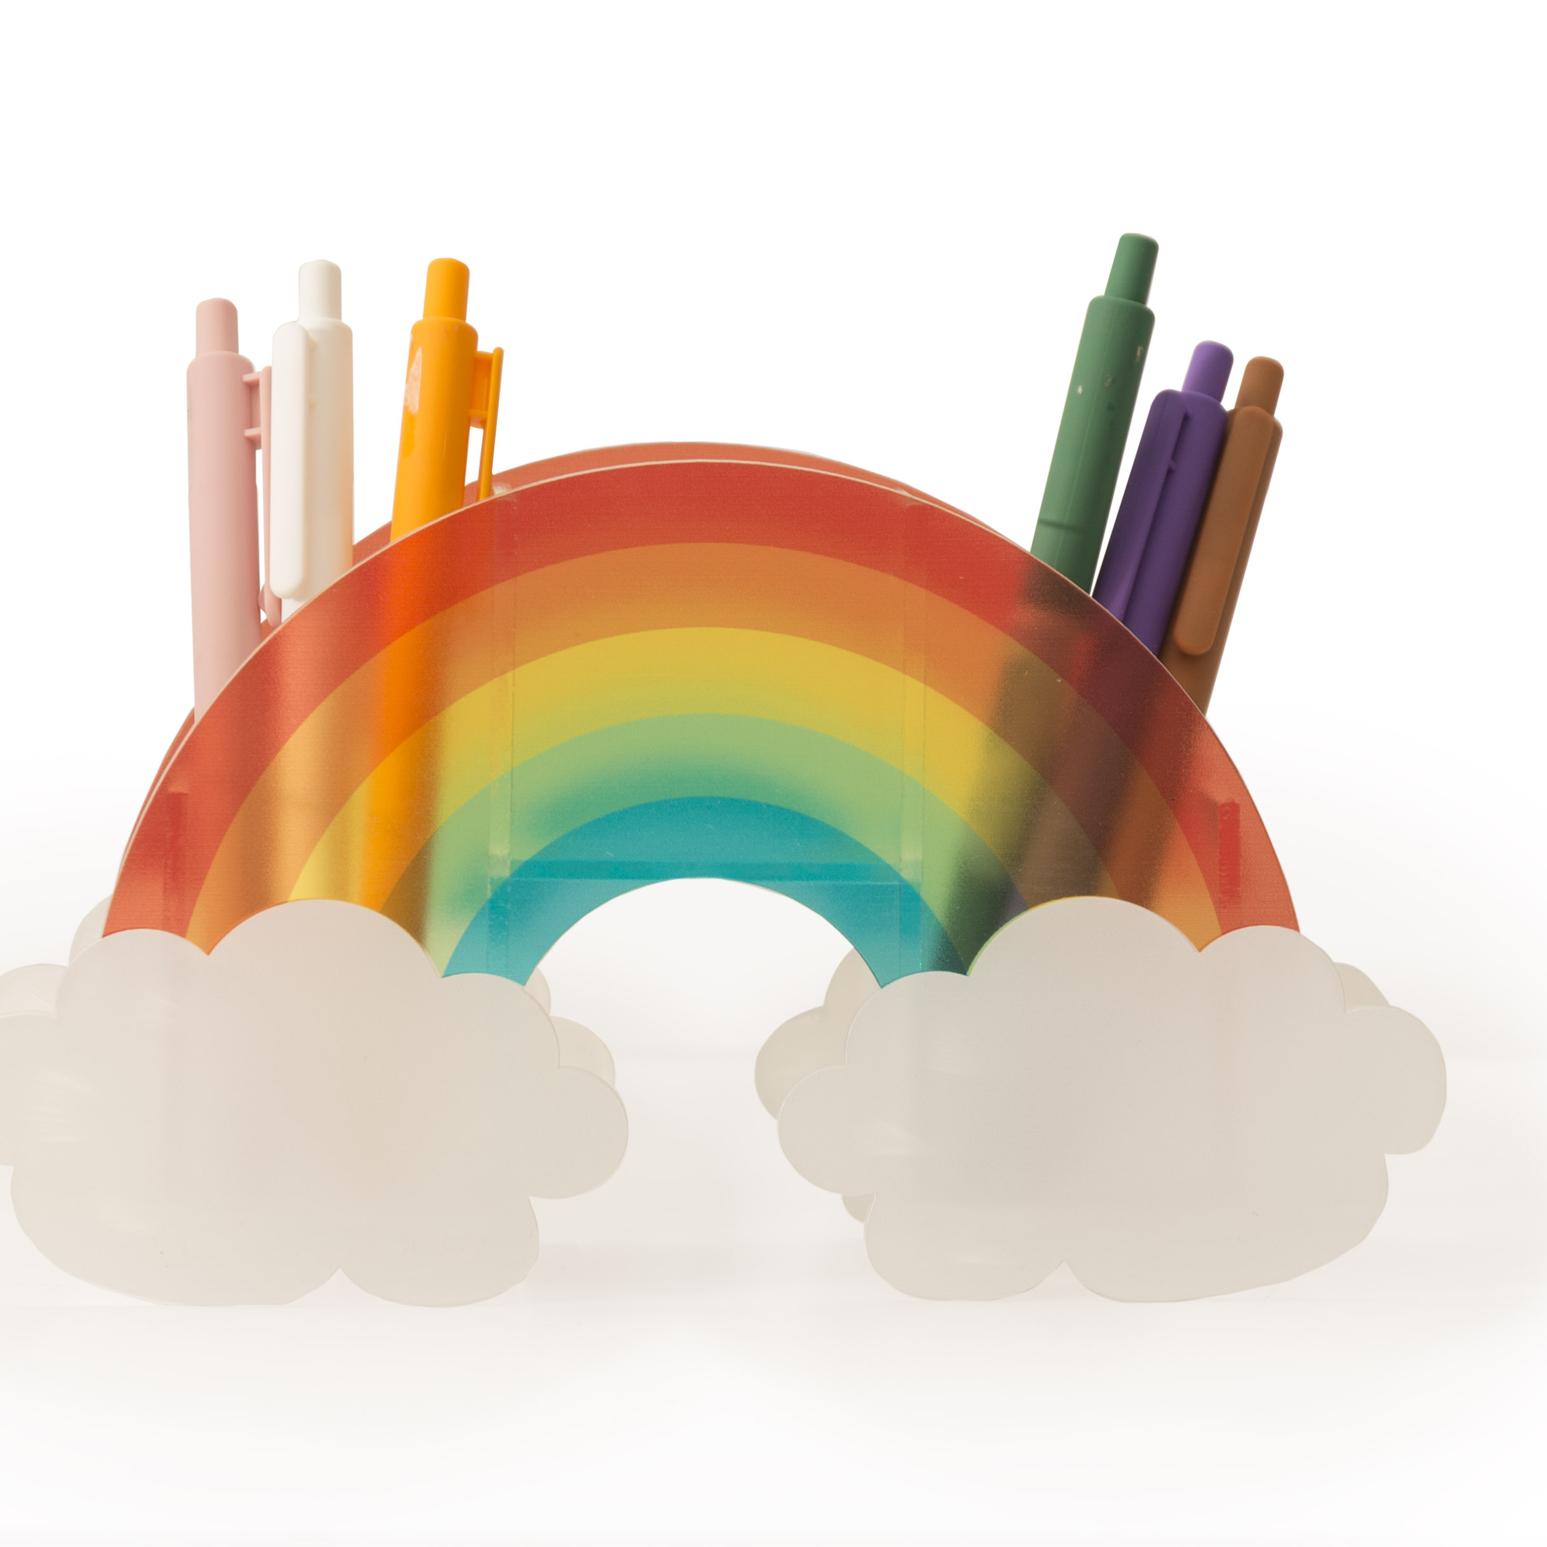 Portalapices de metacrilato con forma de arcoiris multicolor